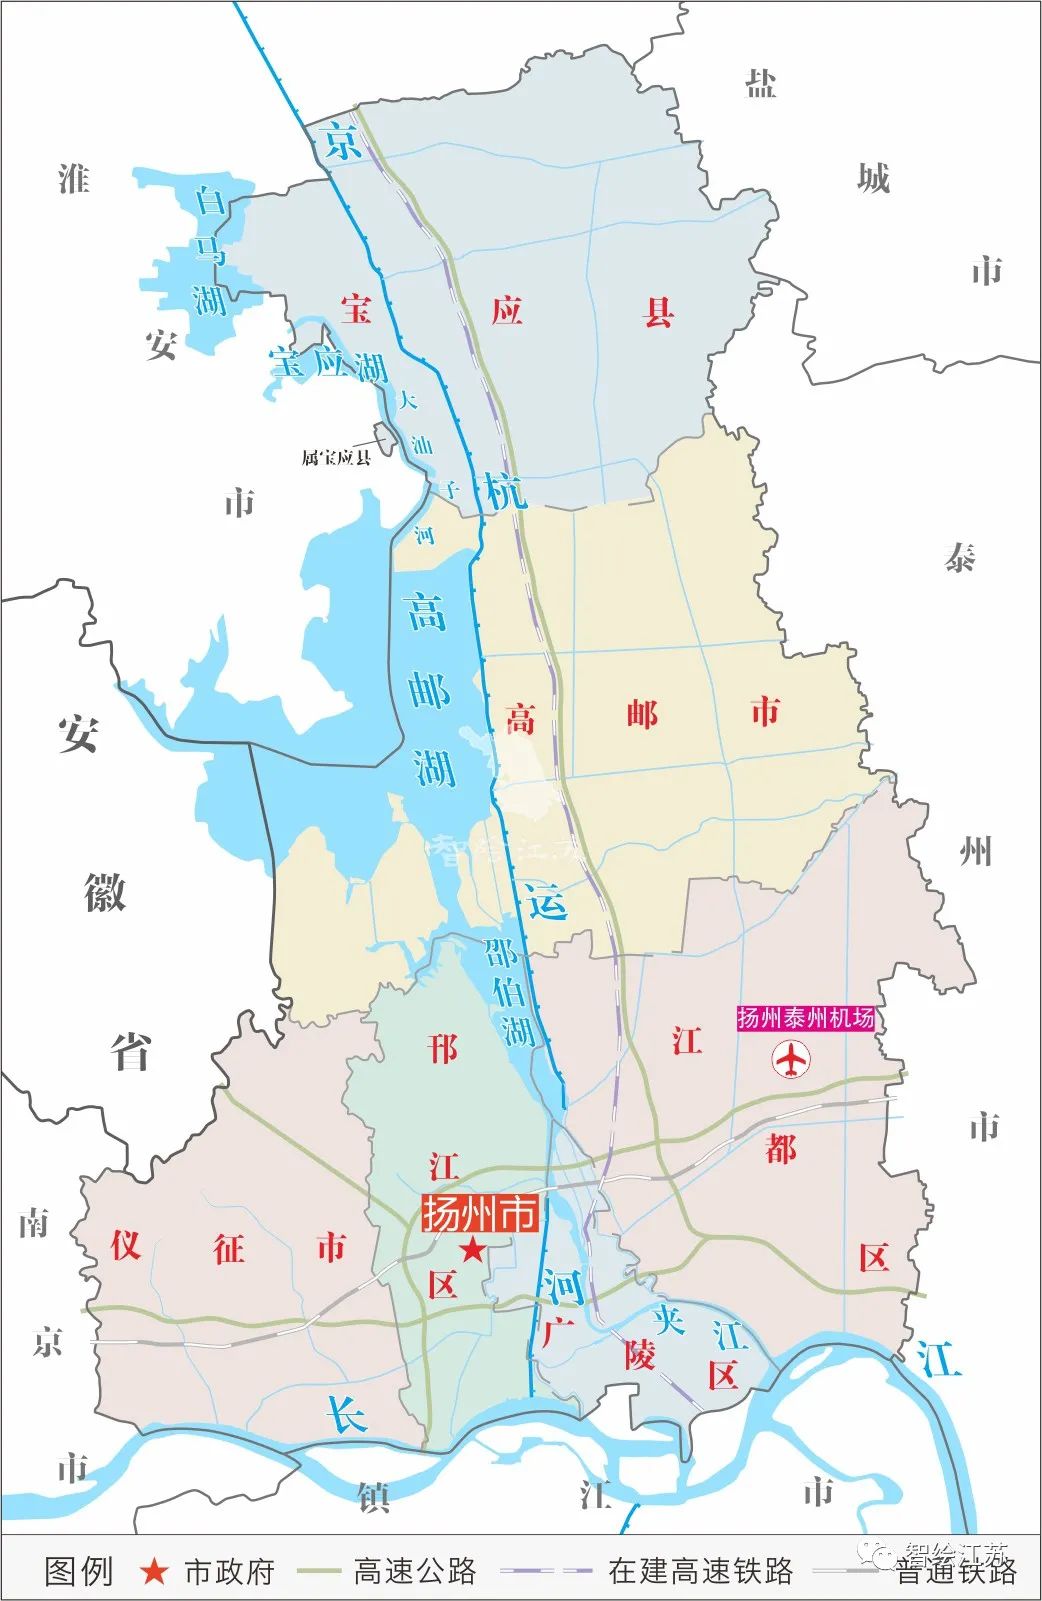 科技资讯 科普| 用地图,看不一样的扬州 (扬州高邮市),东部与盐城市